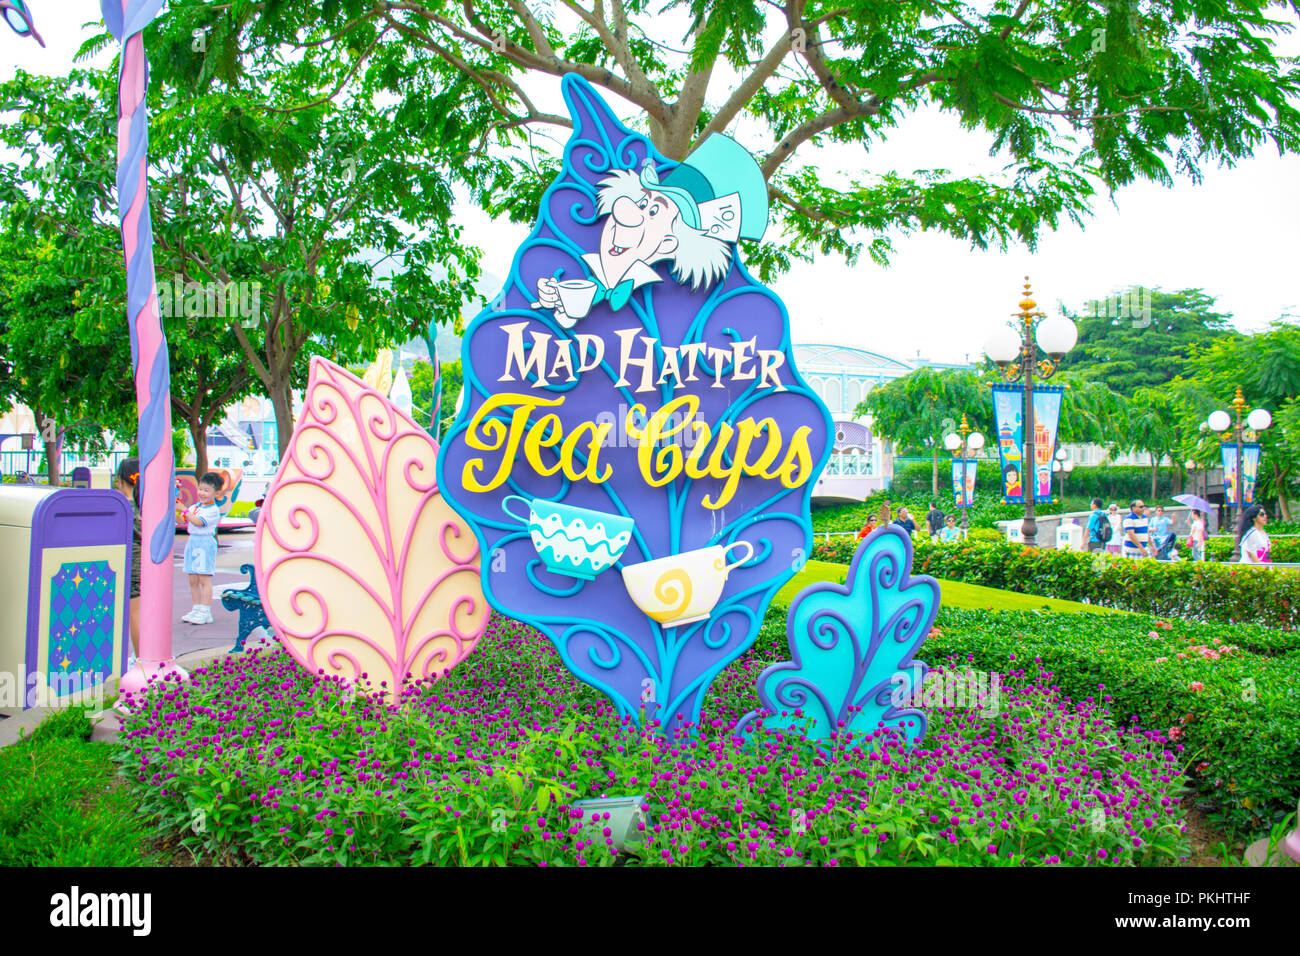 Mad Hatter Tea Cups attraction at Disneyland Hong Kong, Hong Kong Stock Photo